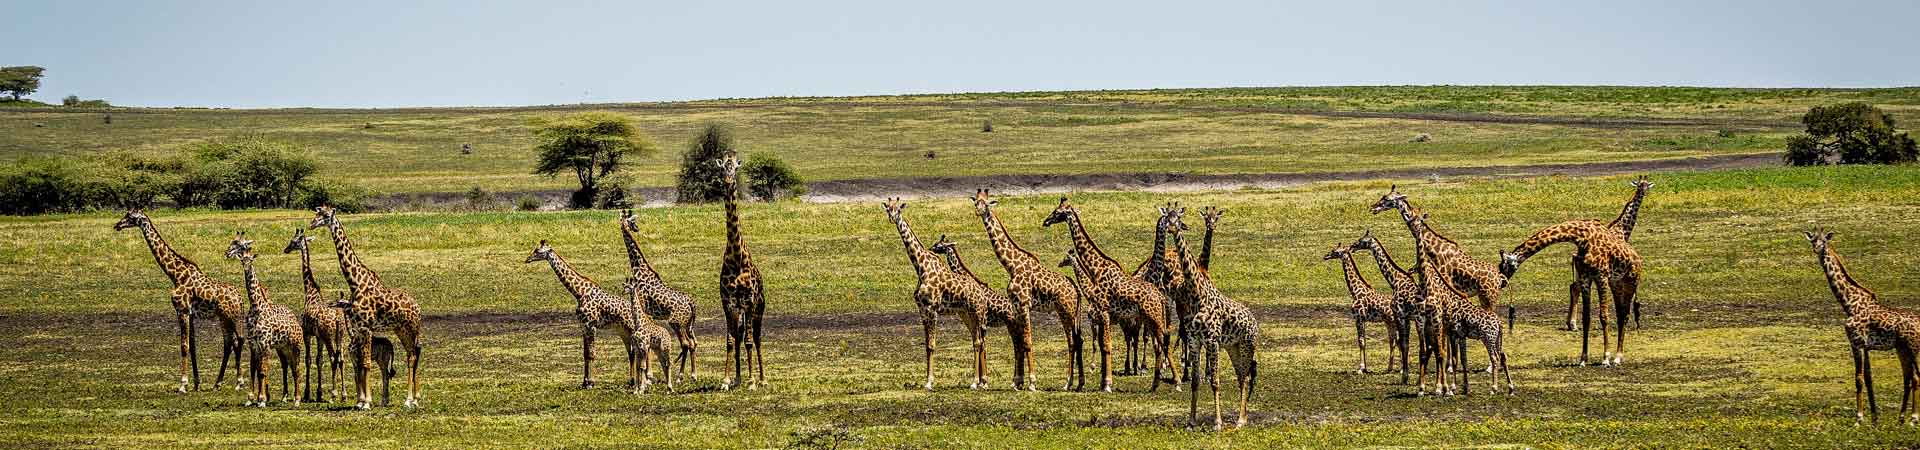 Giraffe at ndutu Safari